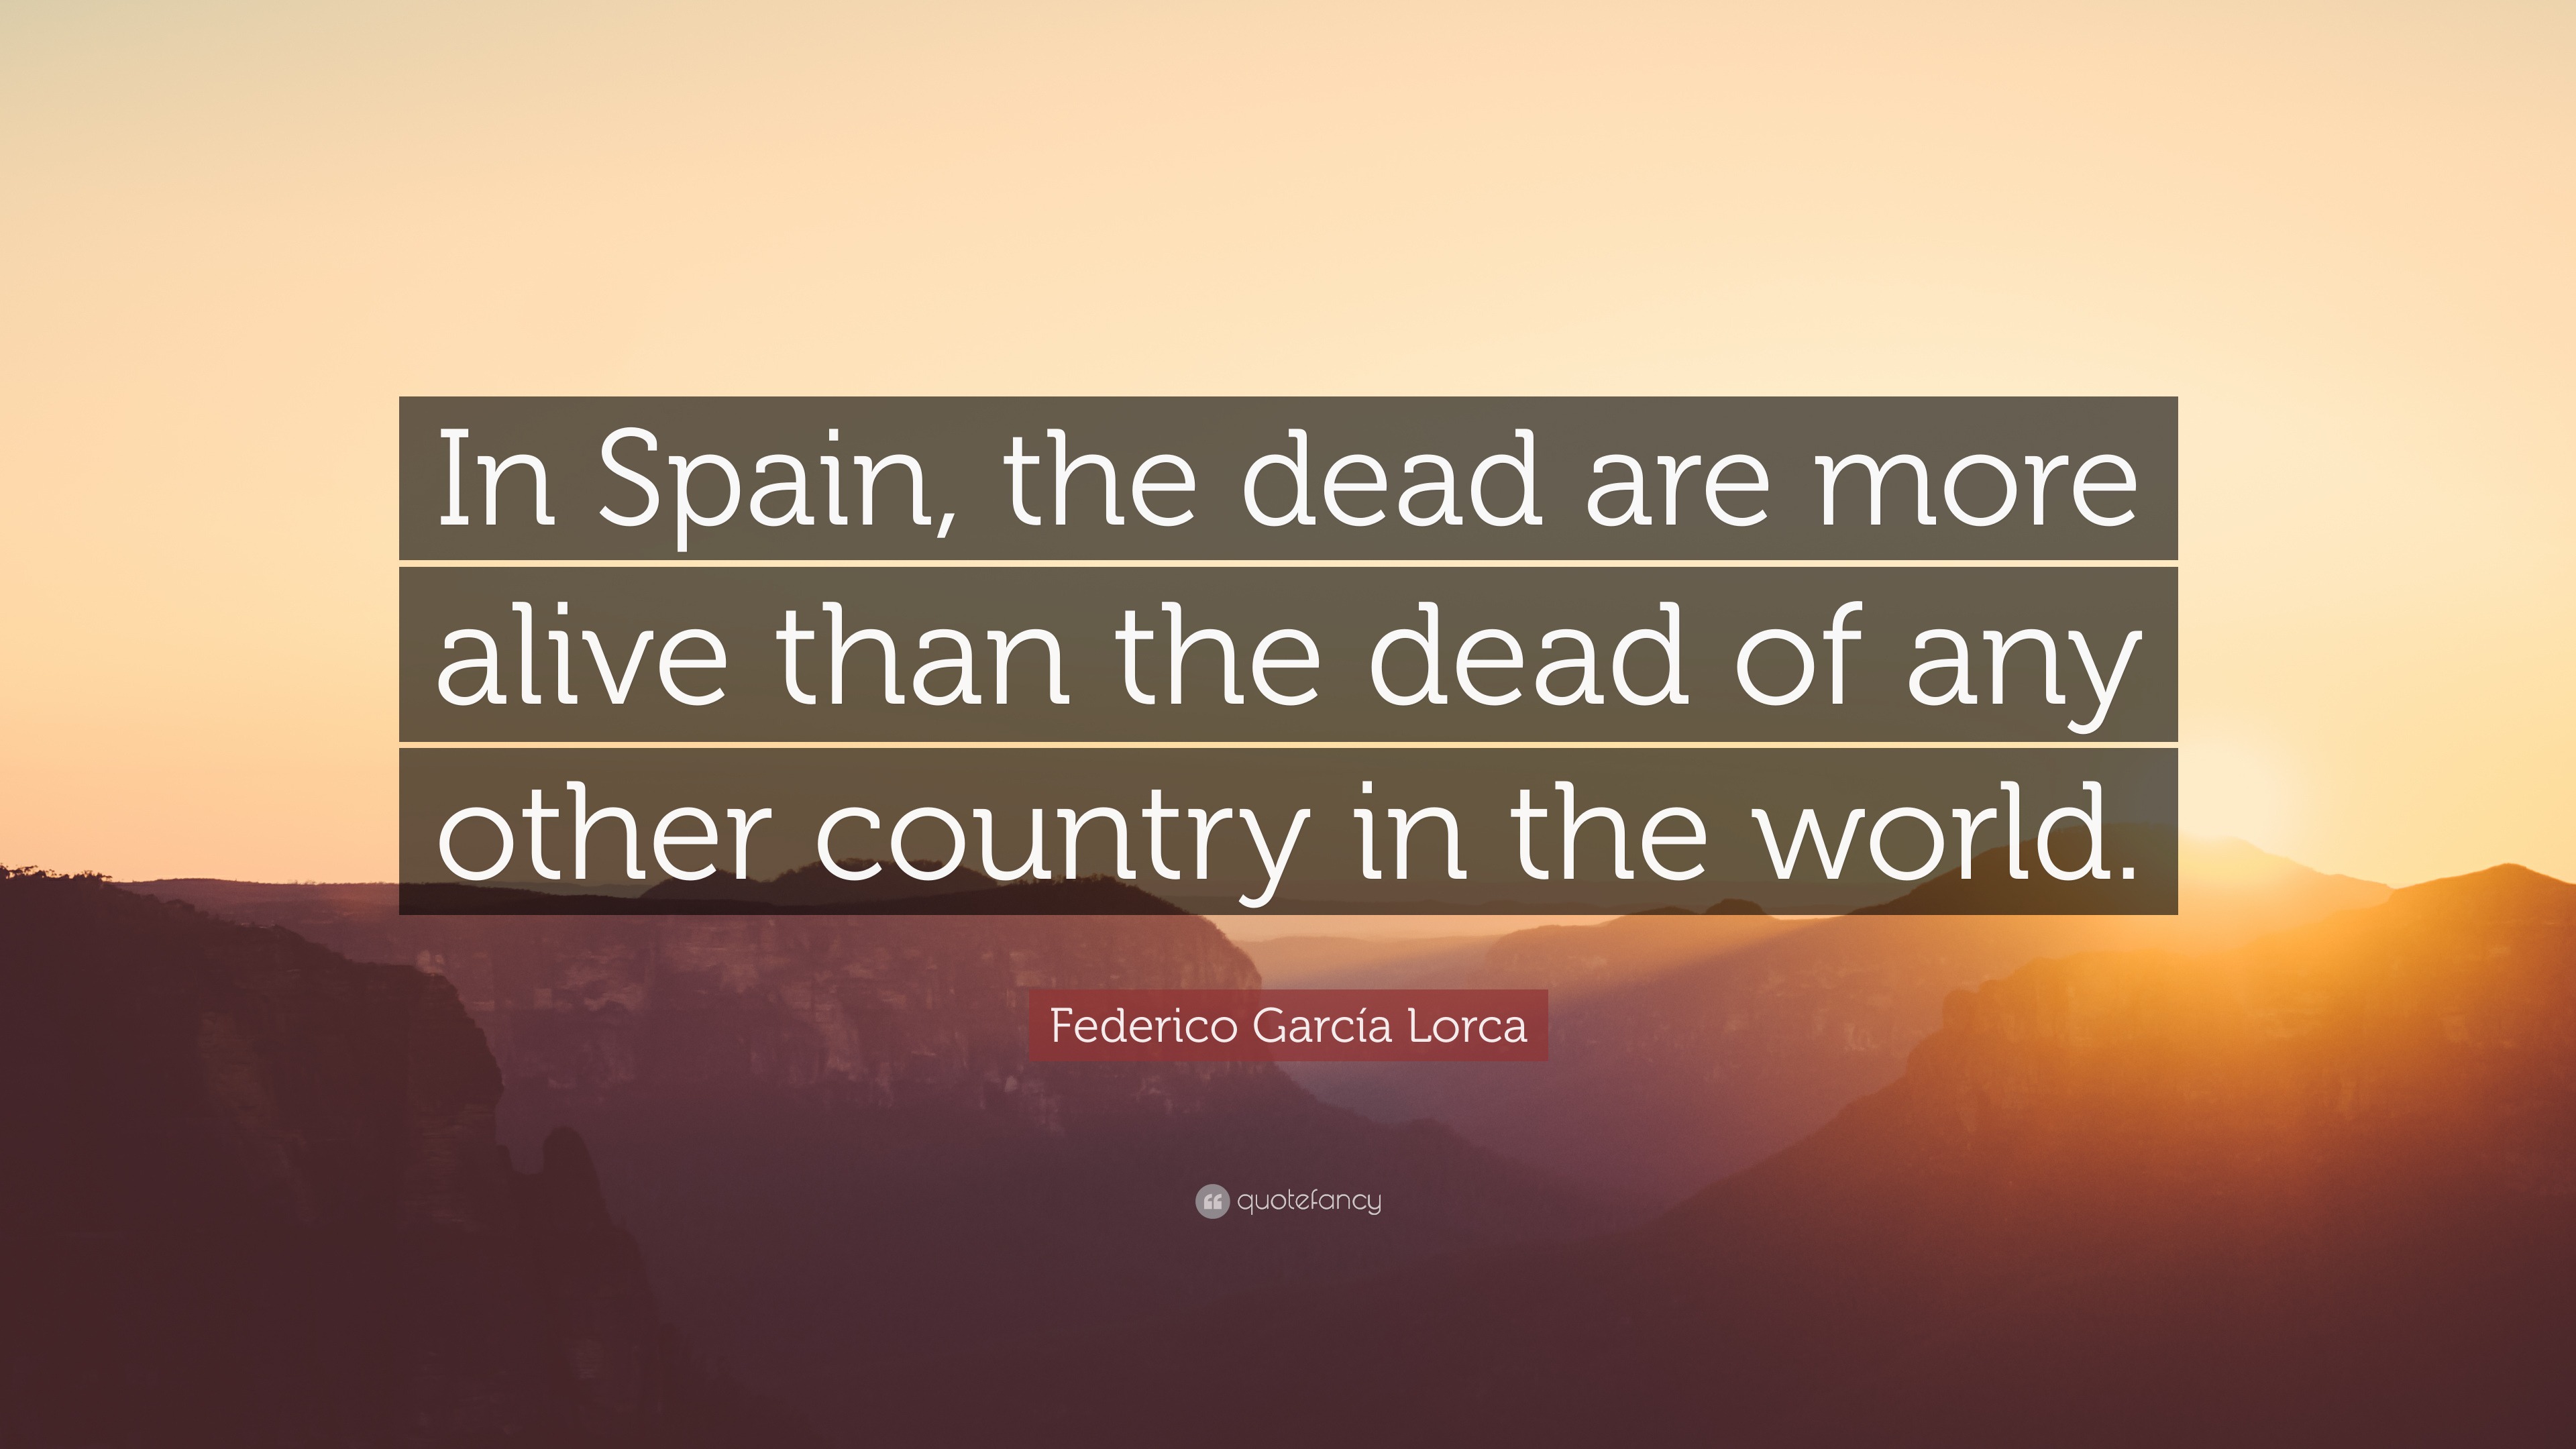 Spanish movie quotes